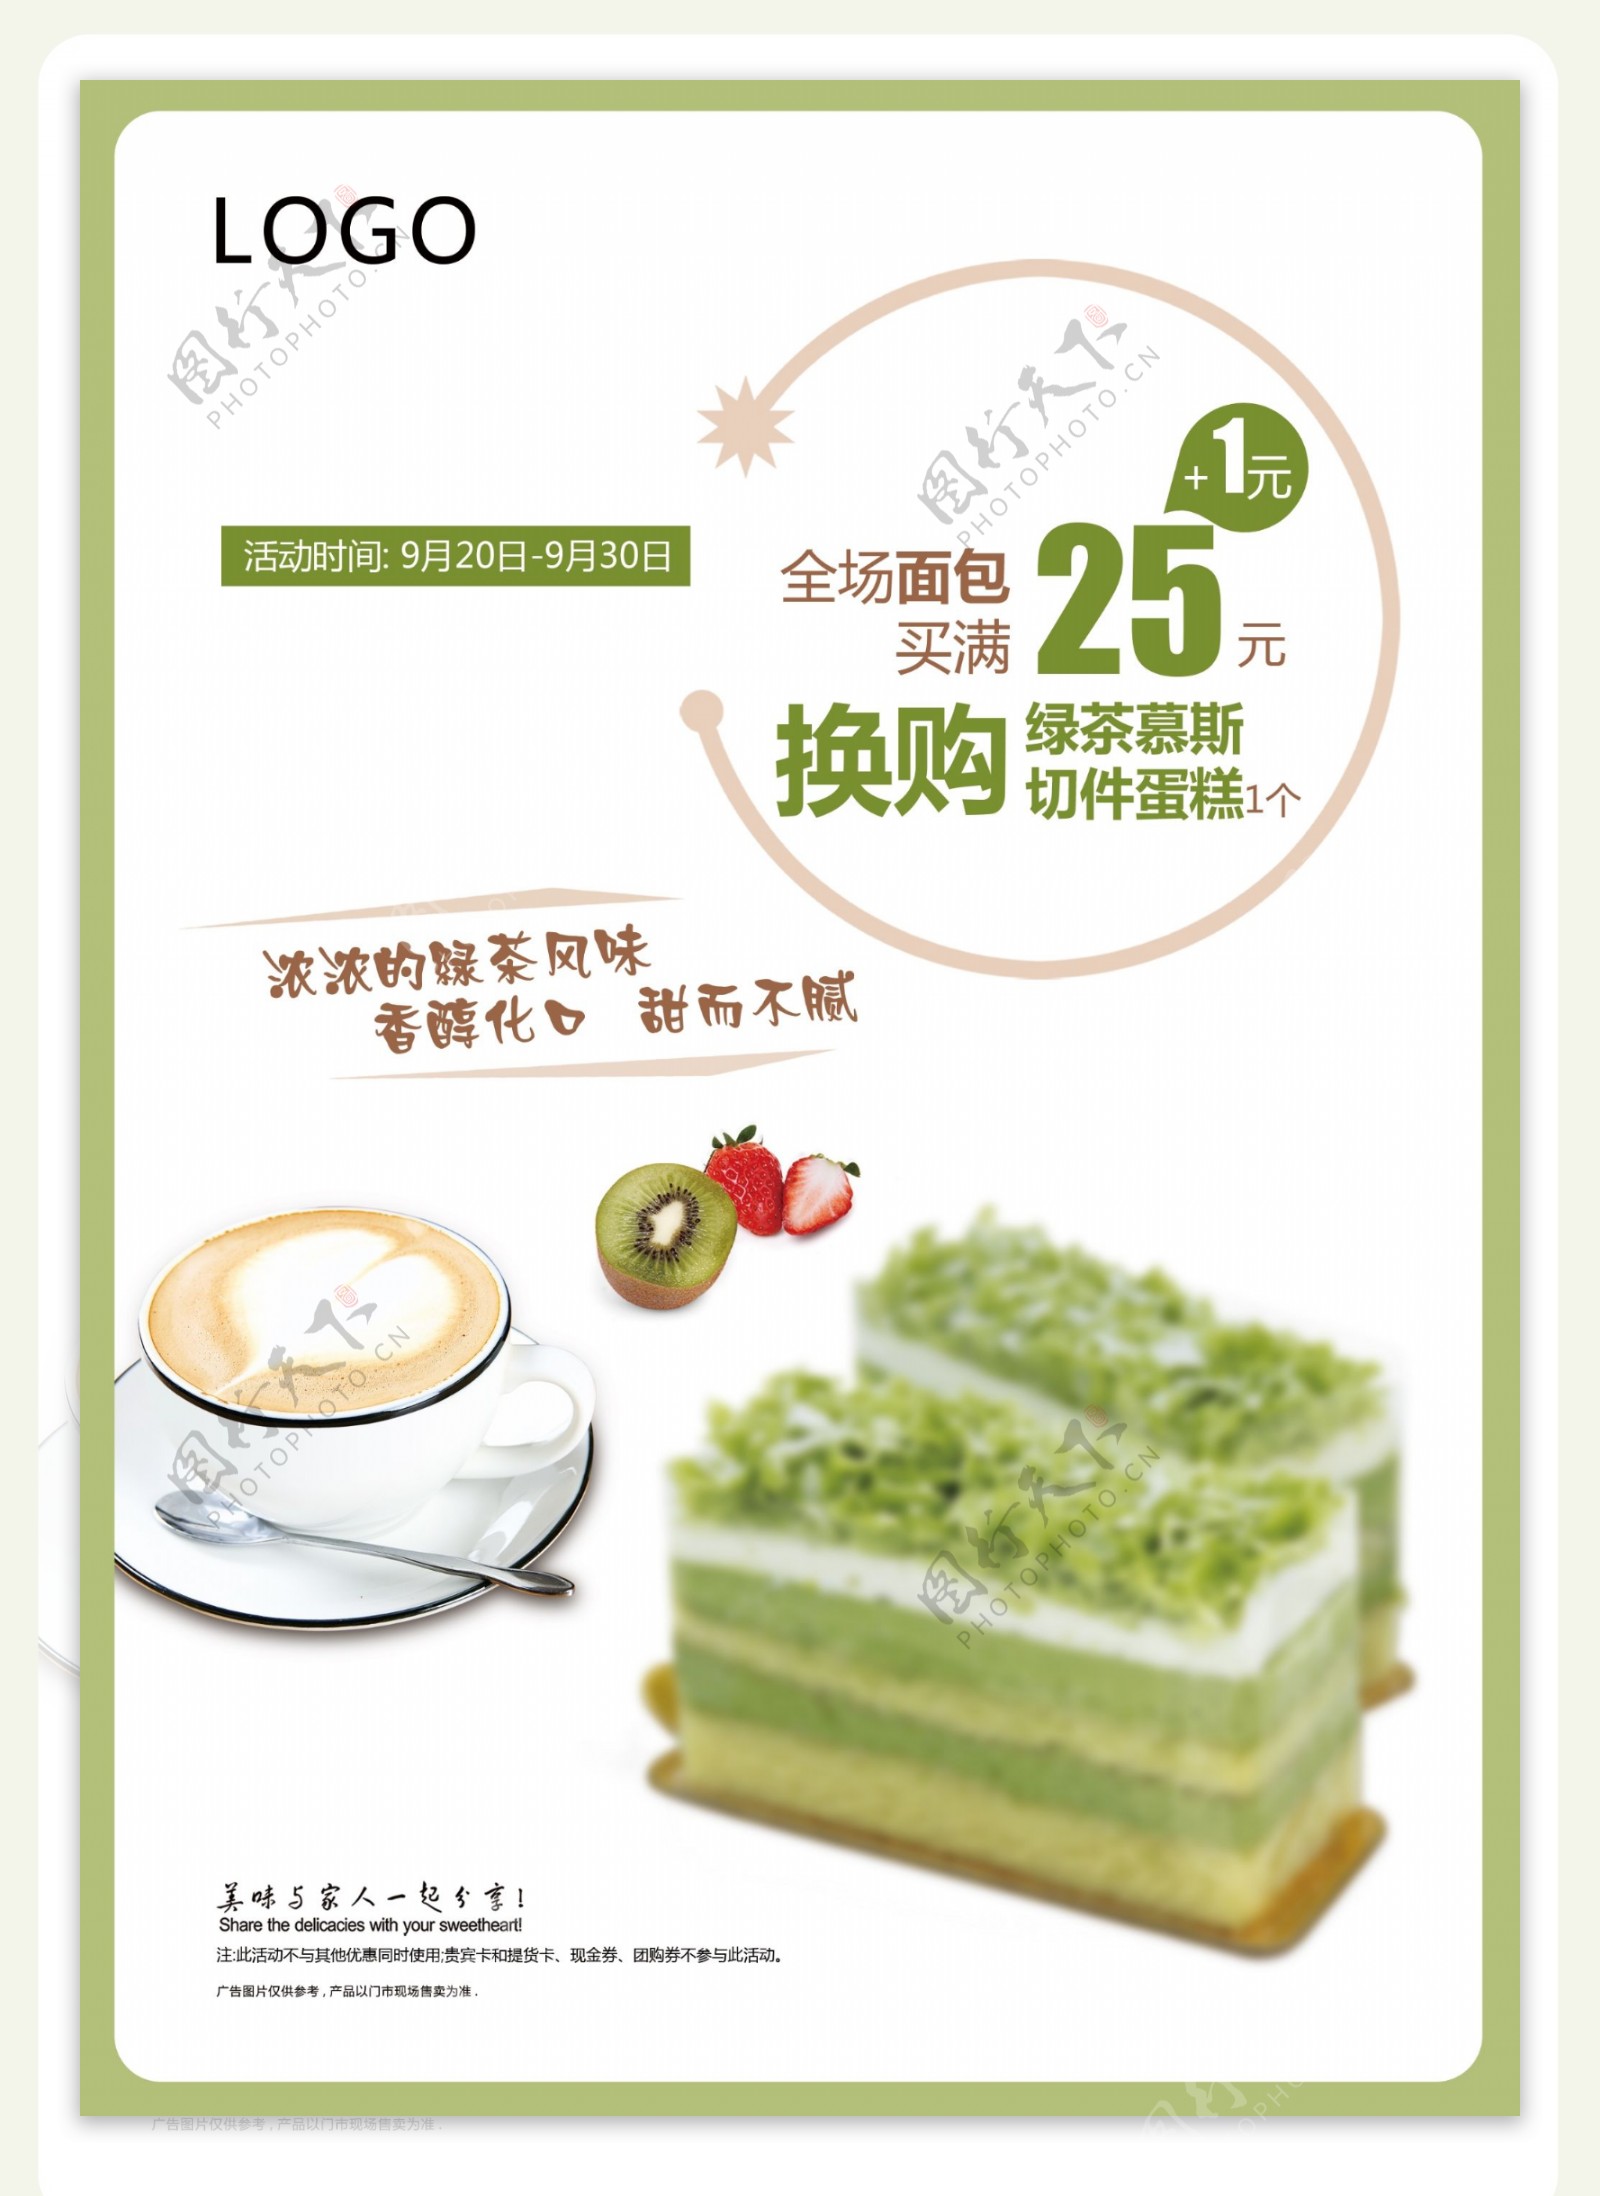 绿茶慕斯蛋糕